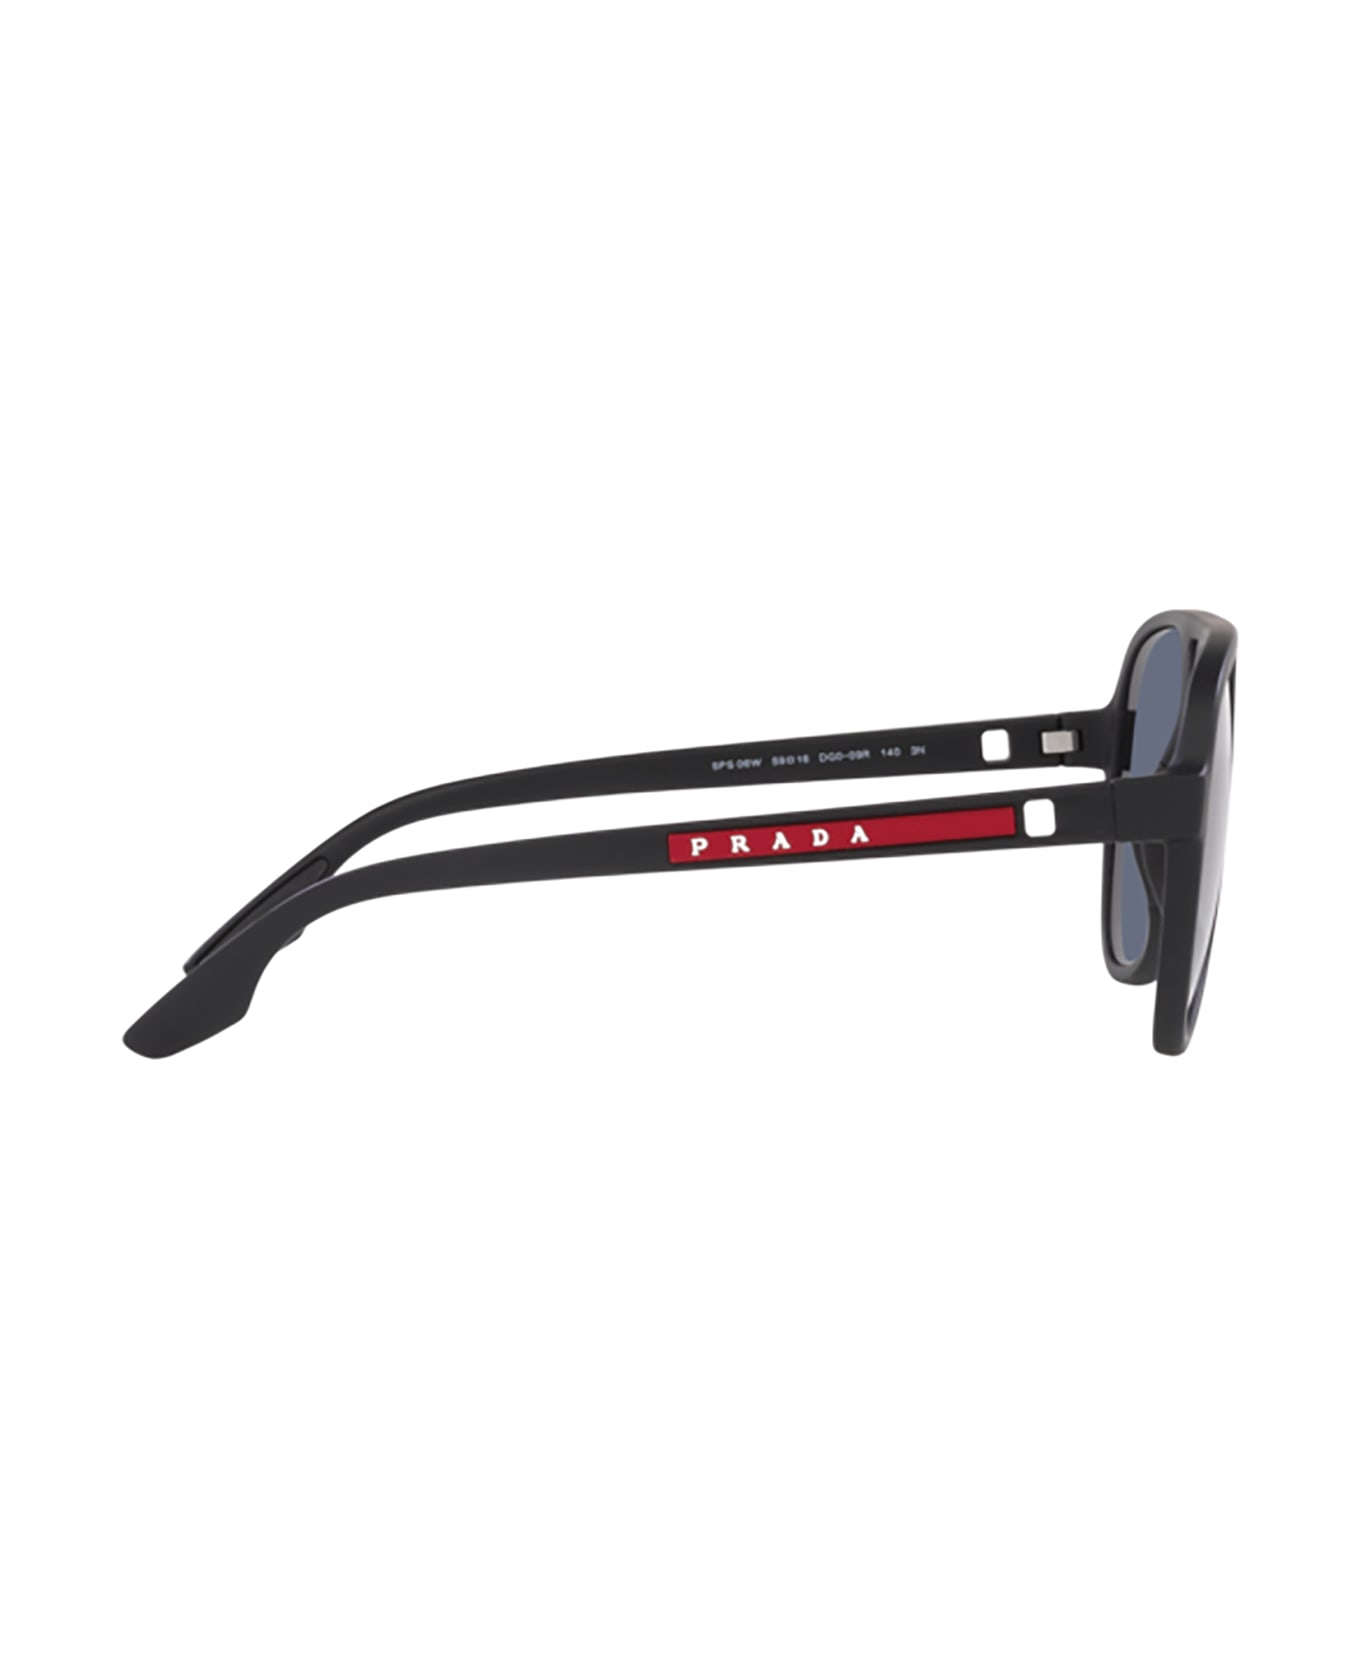 Prada Linea Rossa Ps 06ws Black Rubber Sunglasses - Black Rubber